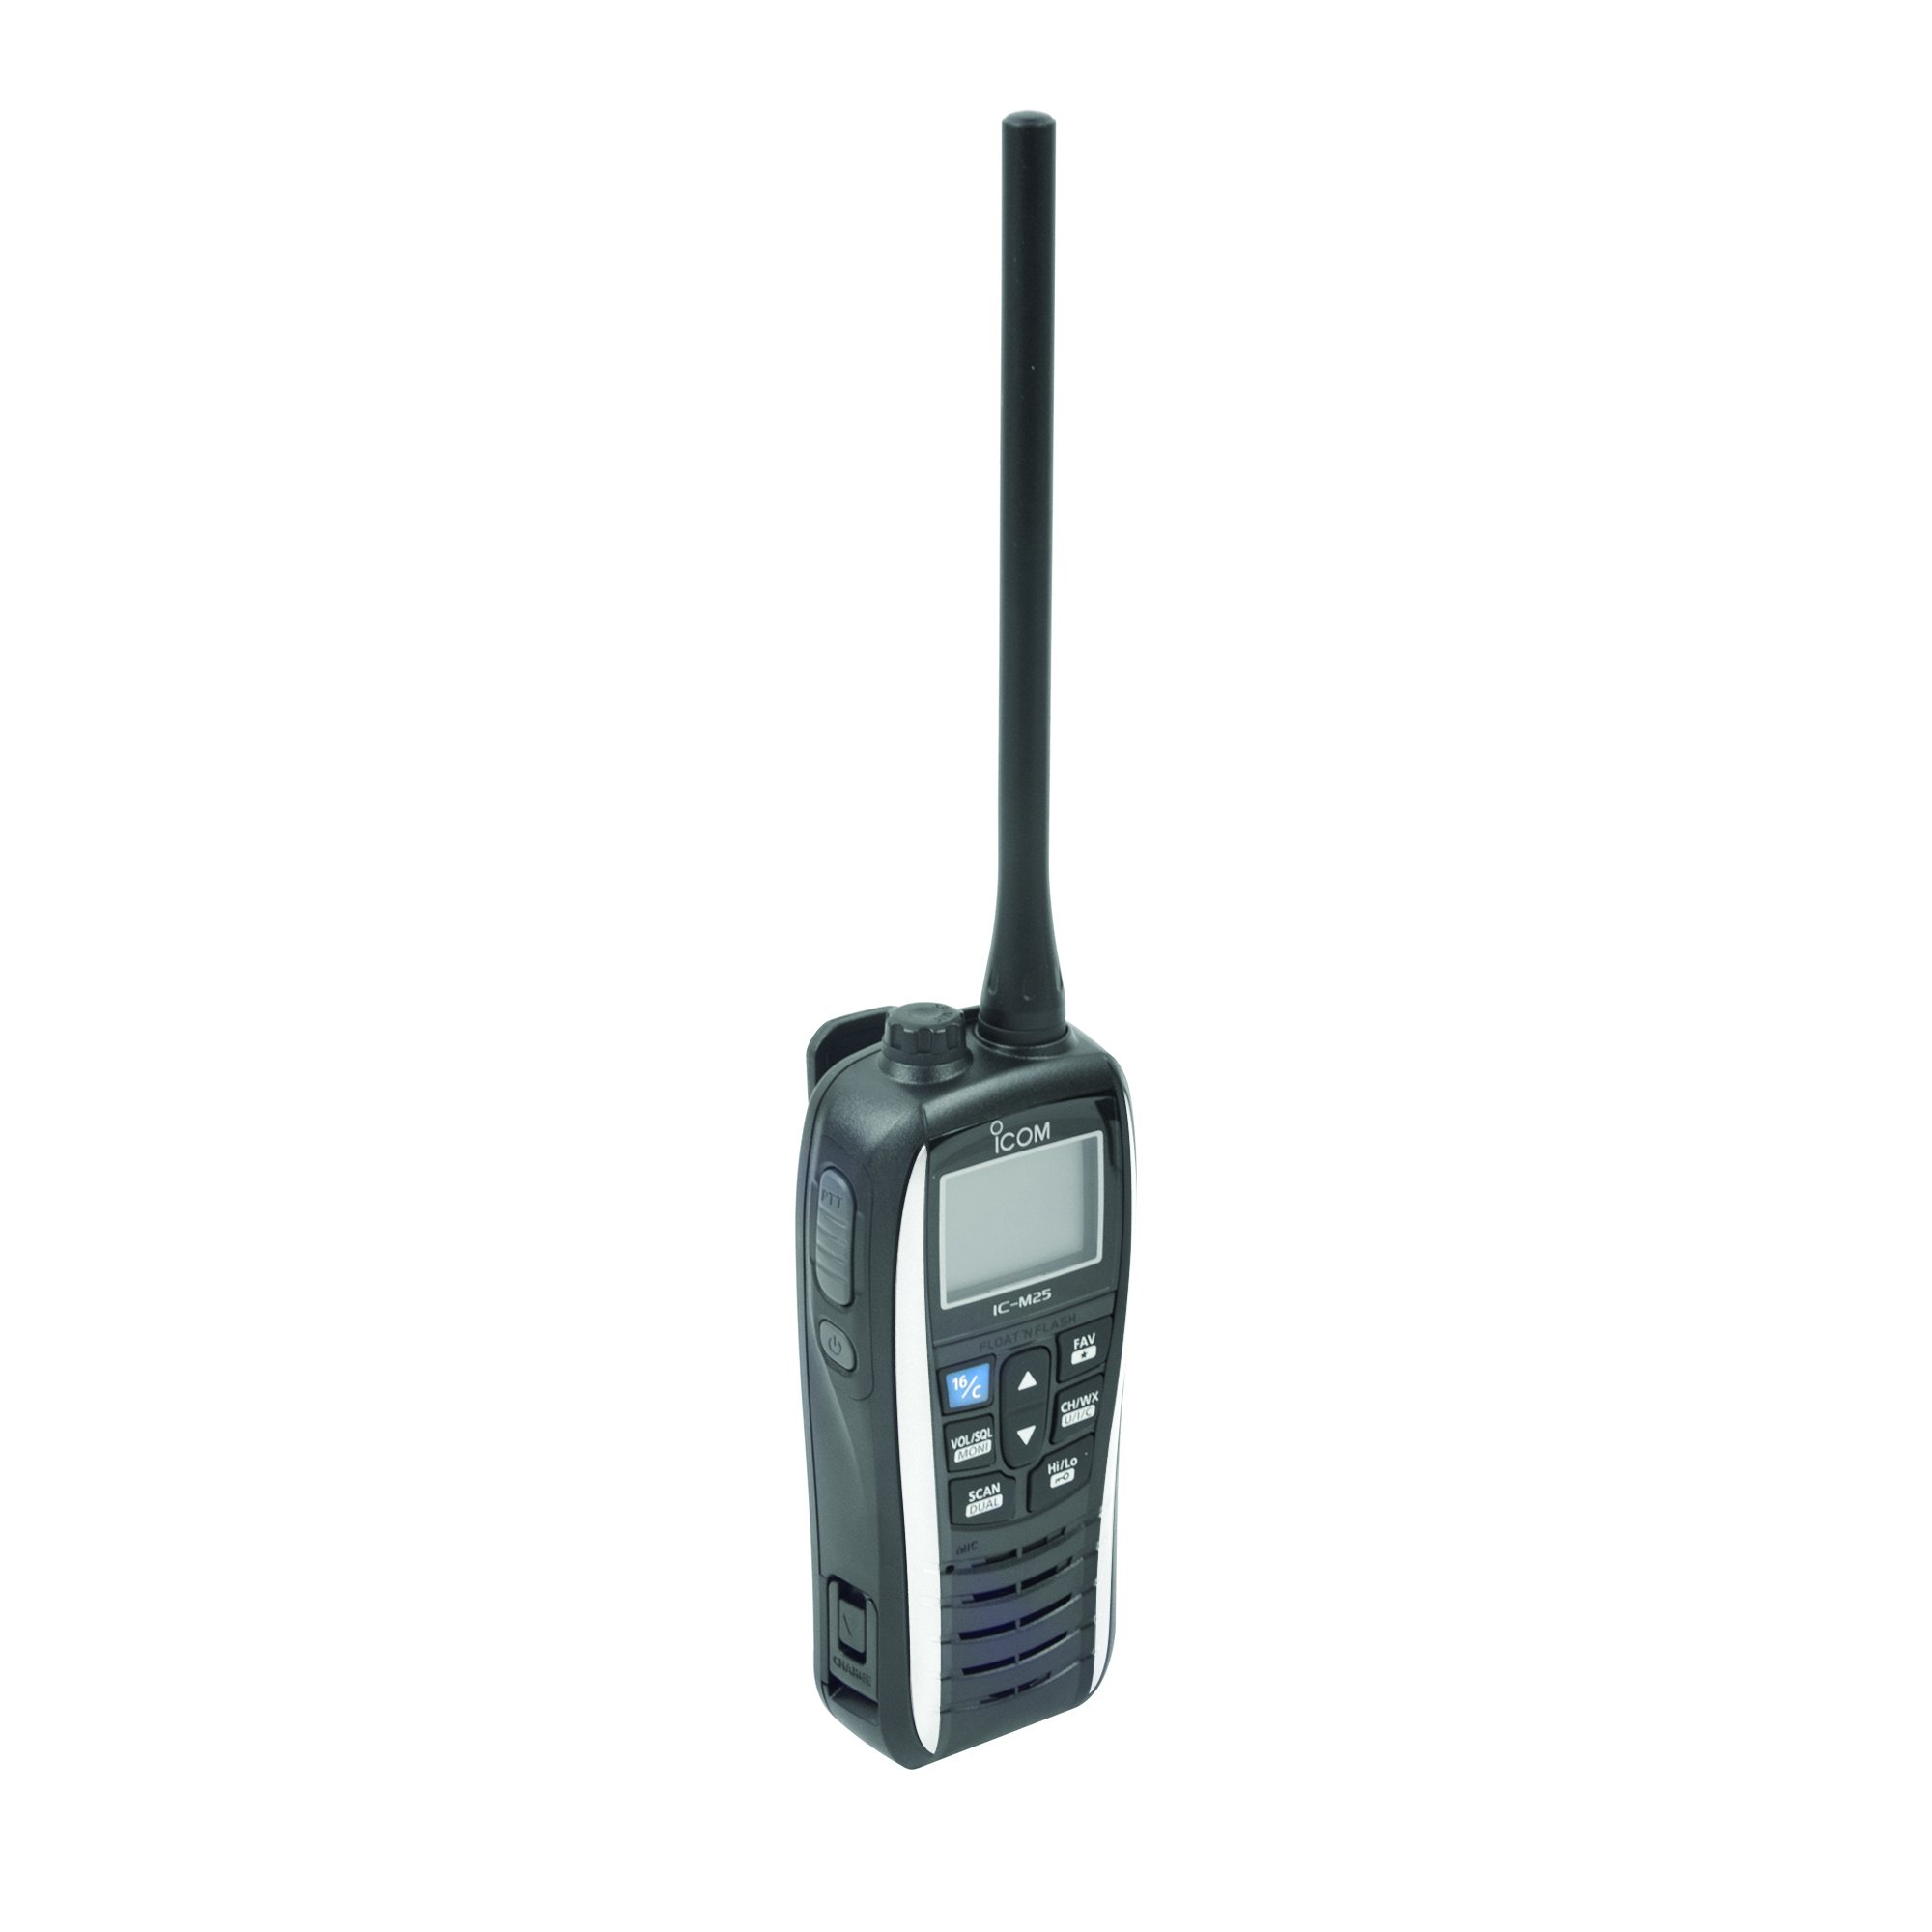 Icom M25 White Handheld VHF Radio, White, 1 watt